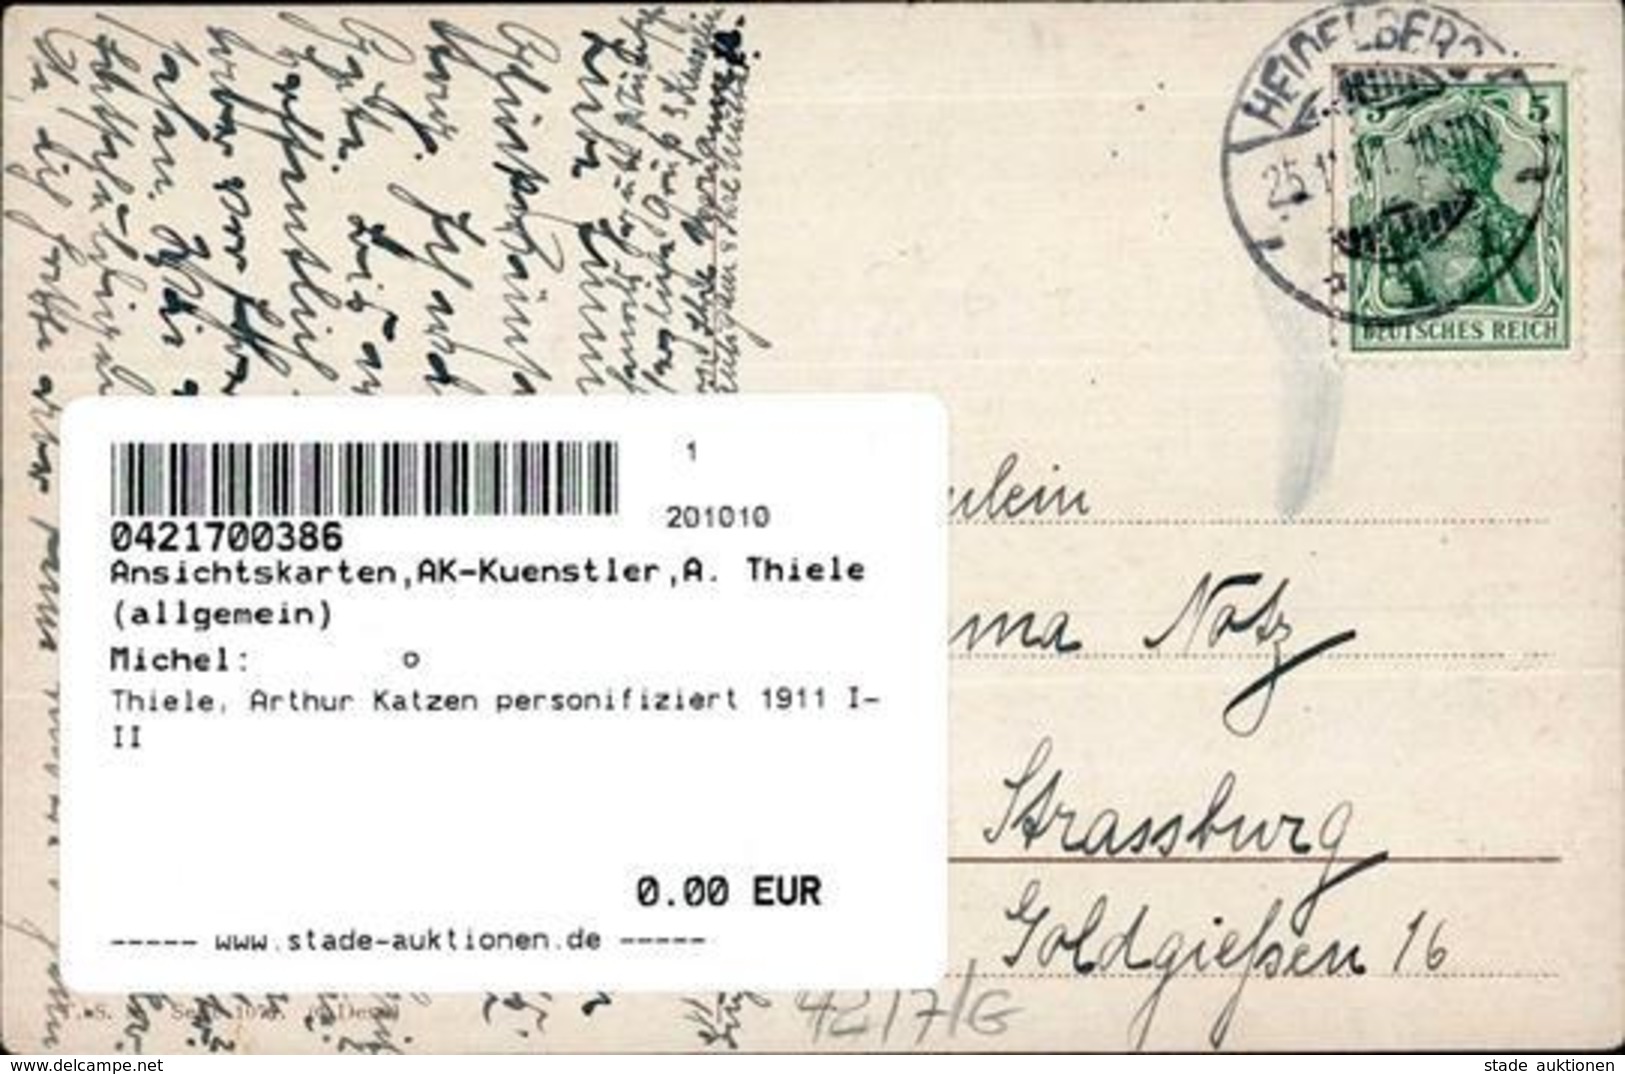 Thiele, Arthur Katzen Personifiziert 1911 I-II Chat - Thiele, Arthur